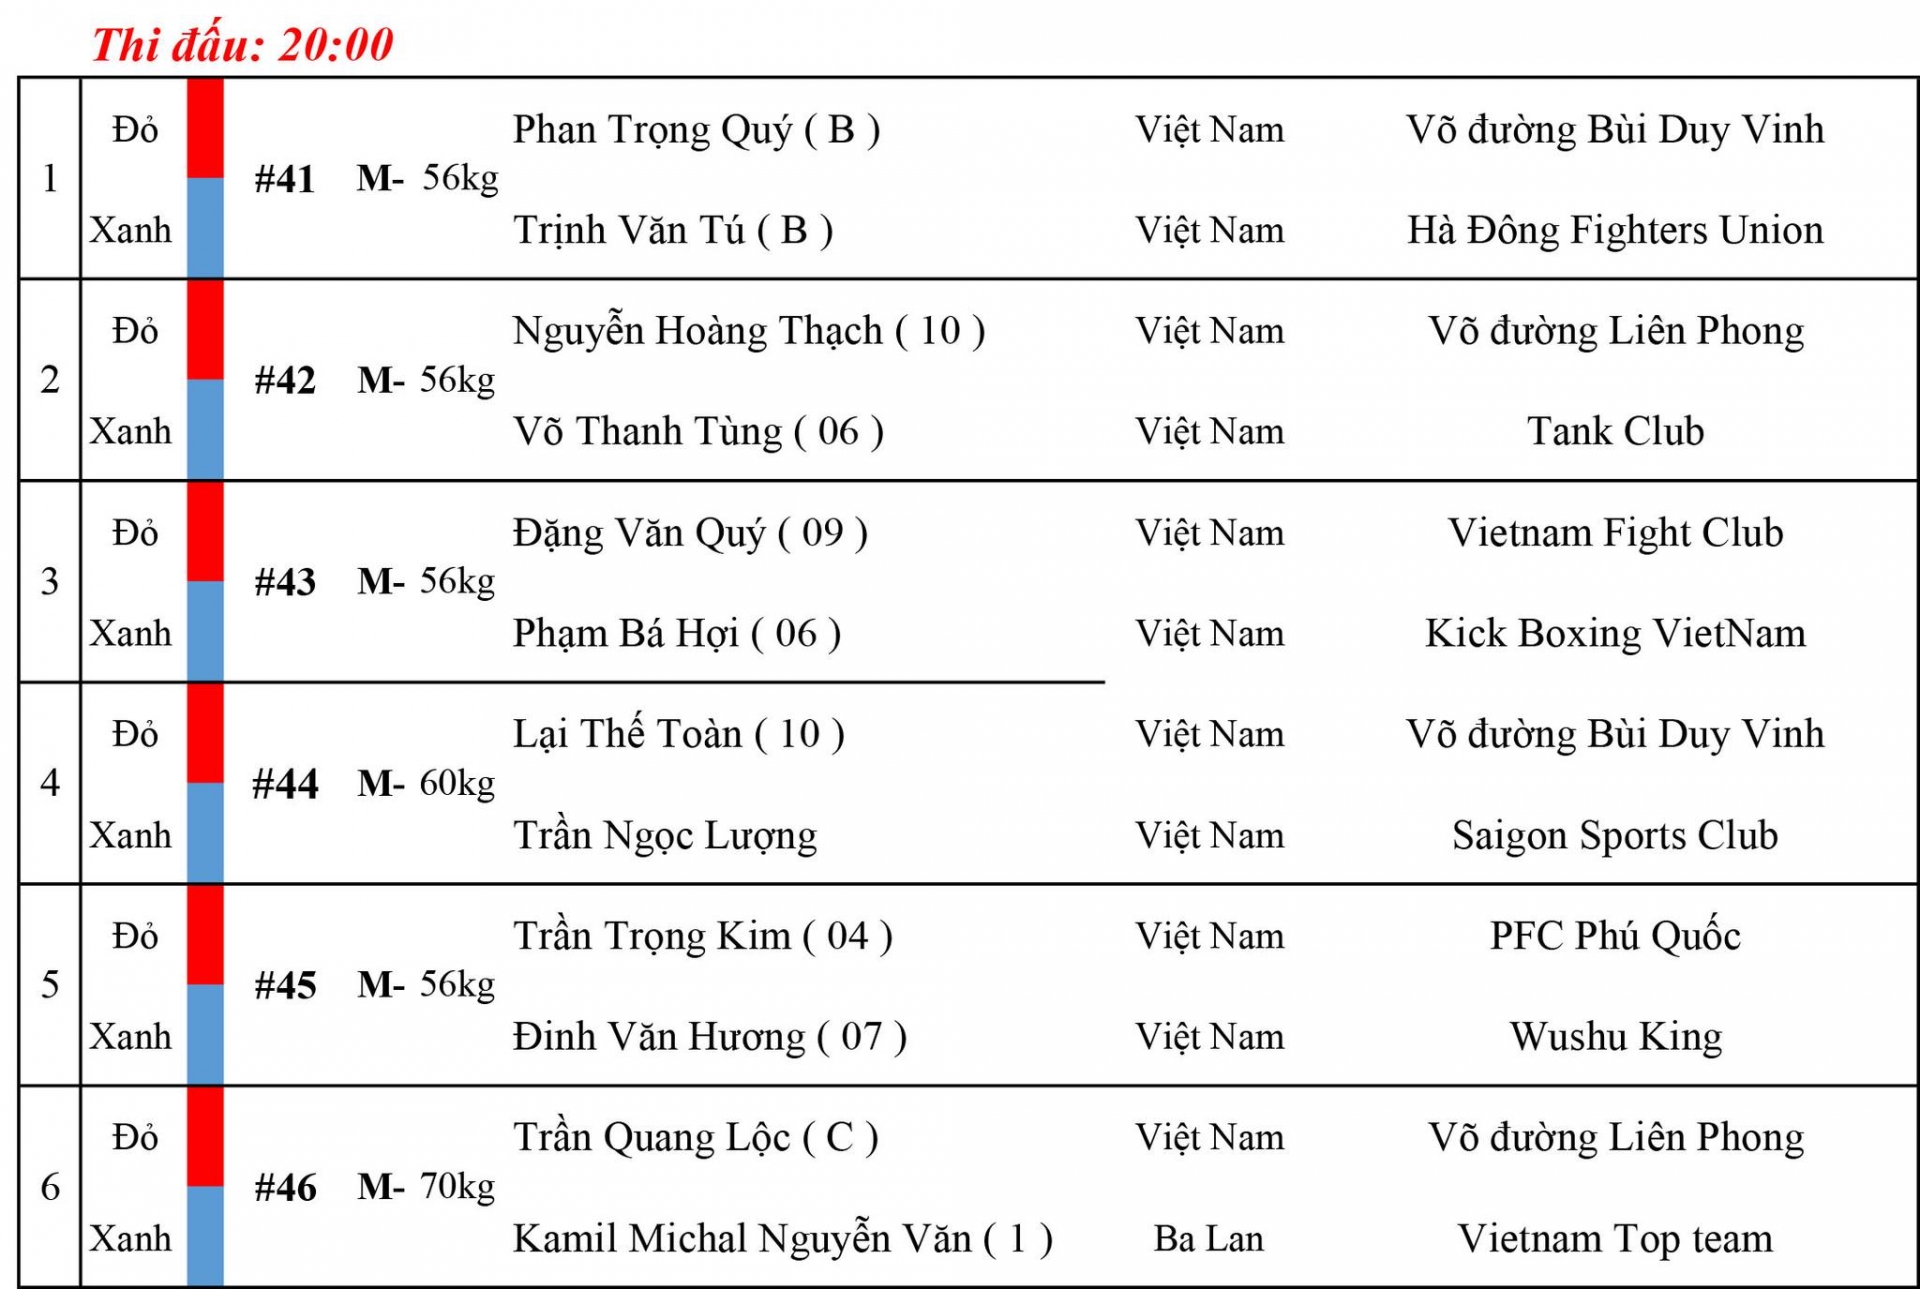 Lịch thi đấu MMA LION Championship 6: Trần Quang Lộc vs Kamil Nguyễn Văn 284880